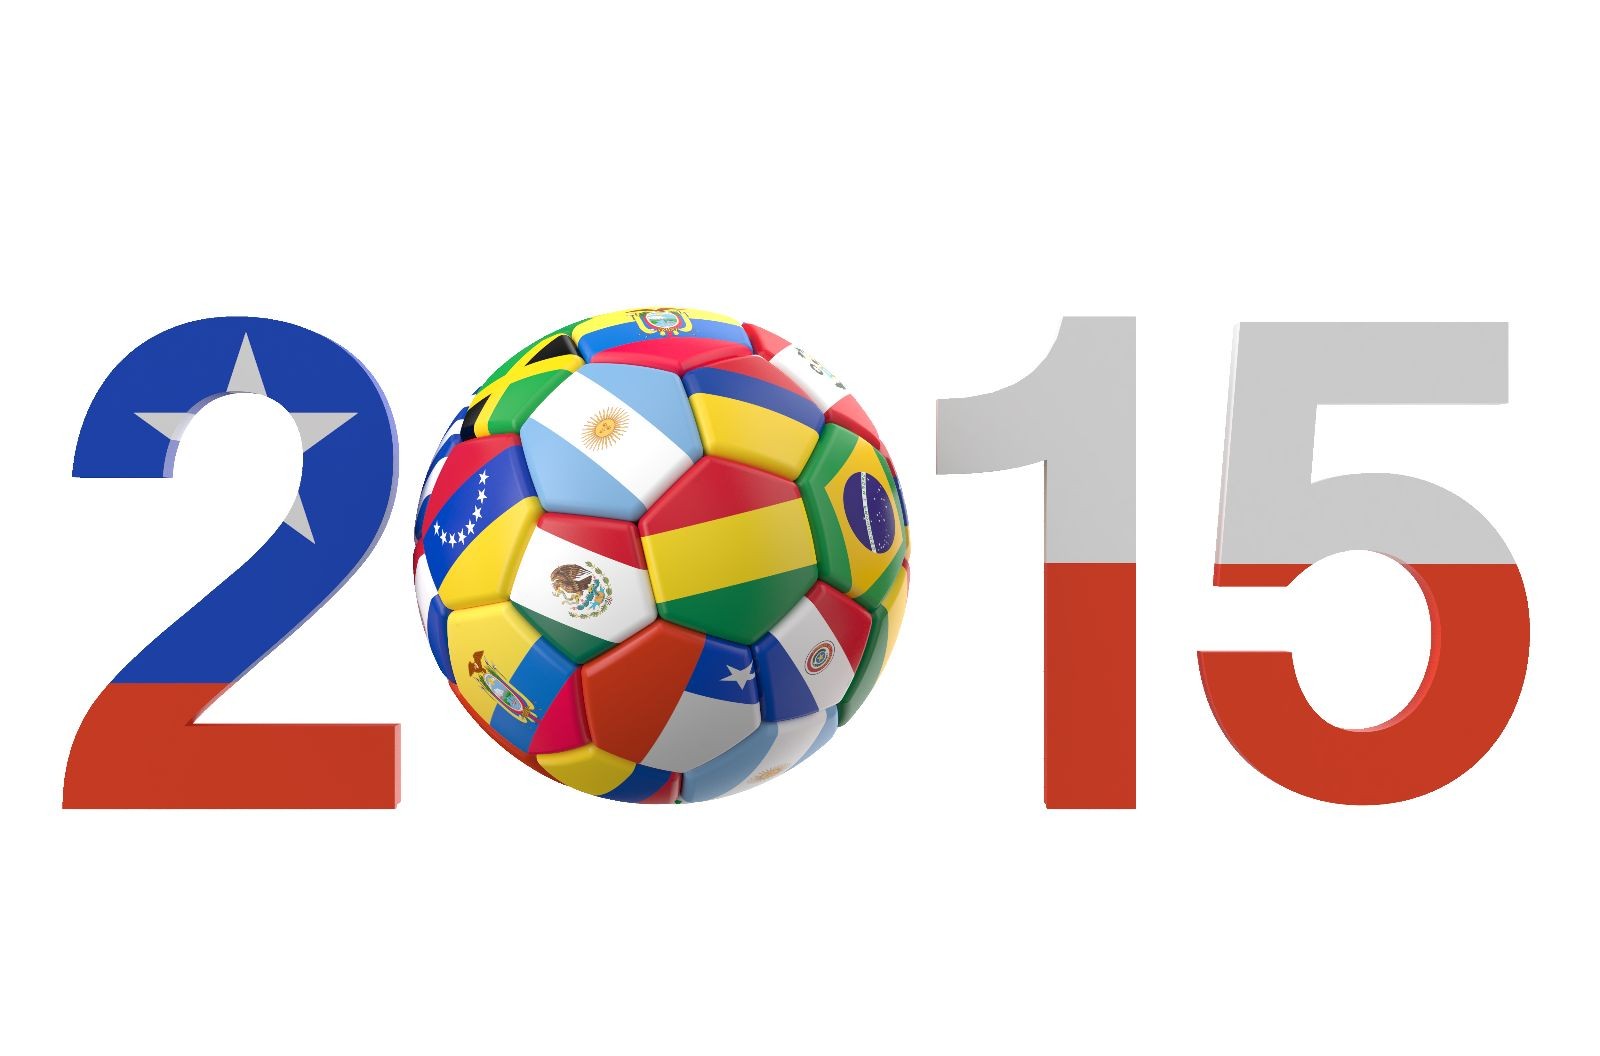 Númeroes 2015 con la bandera de chile el cero es un balón con hexagramas que contienen las banderas de diversos paises